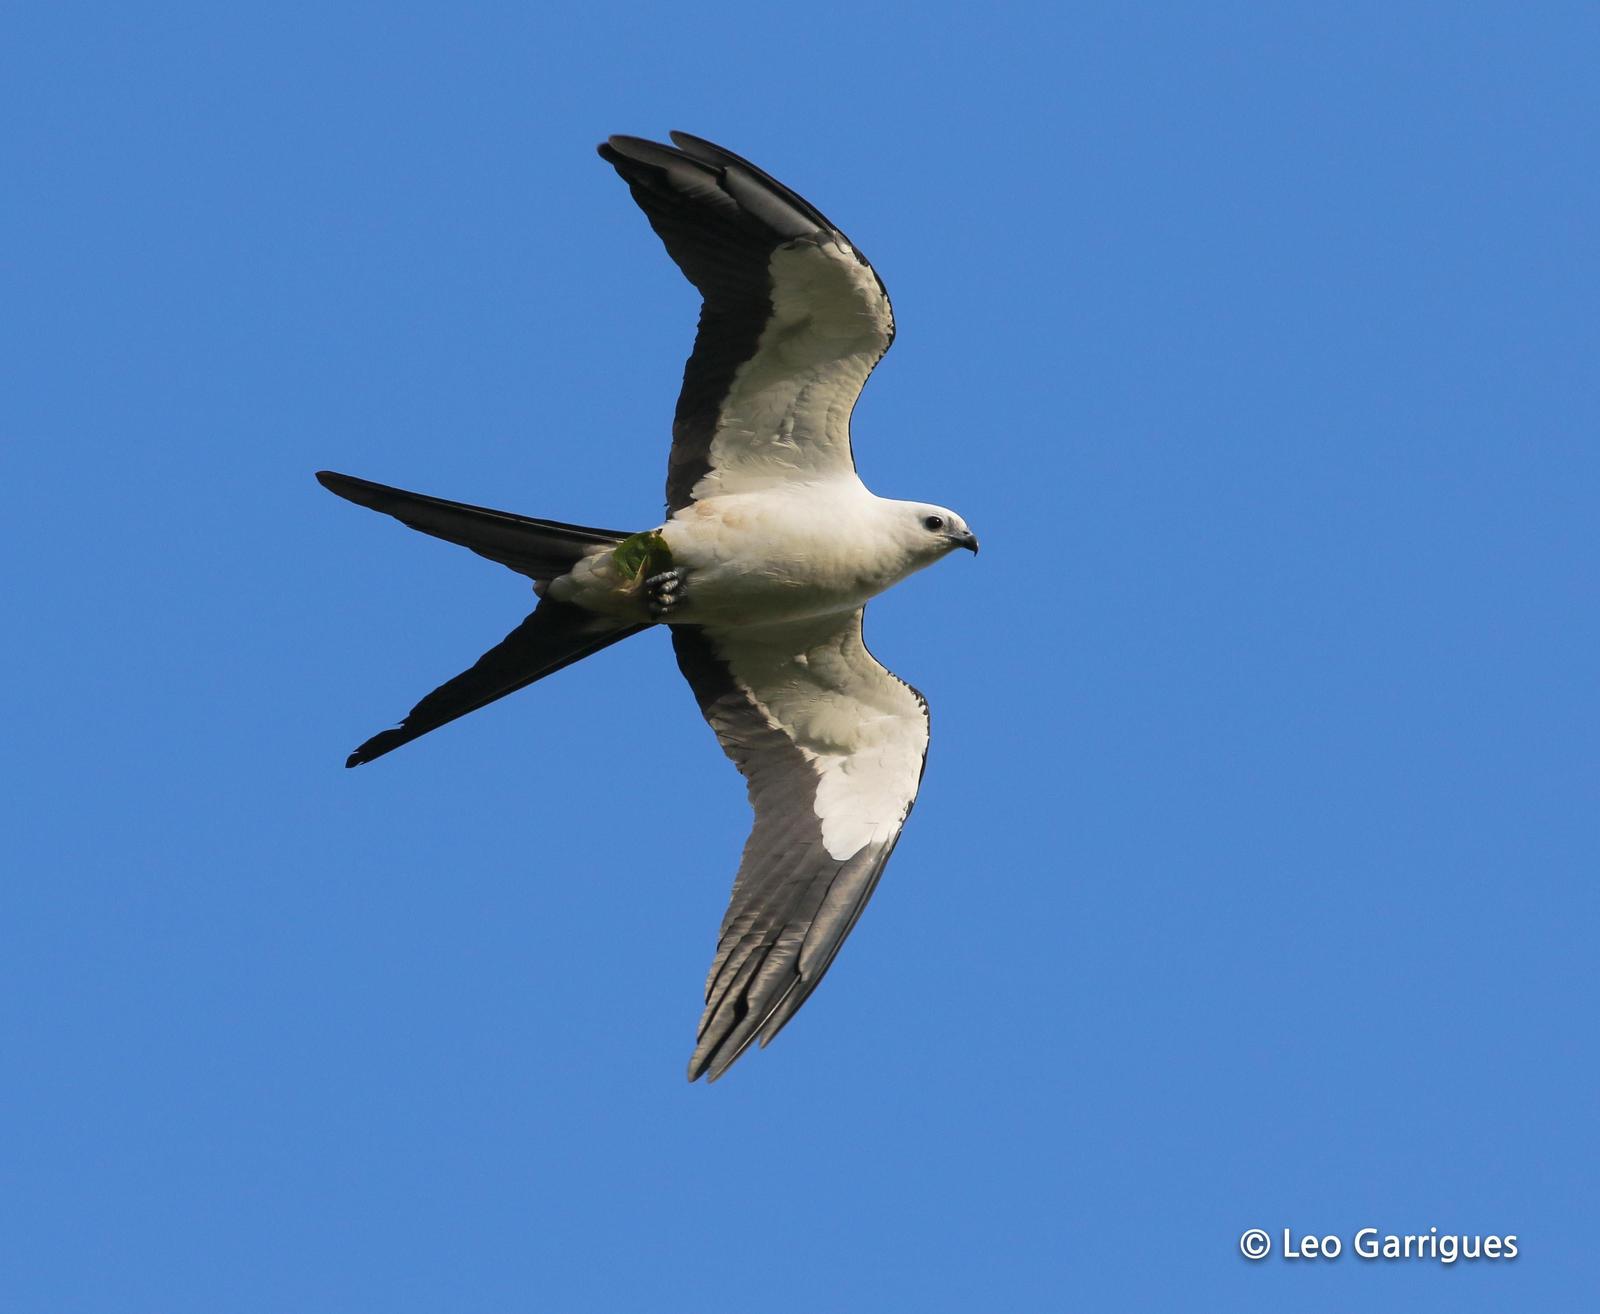 Swallow-tailed Kite Photo by Leonardo Garrigues